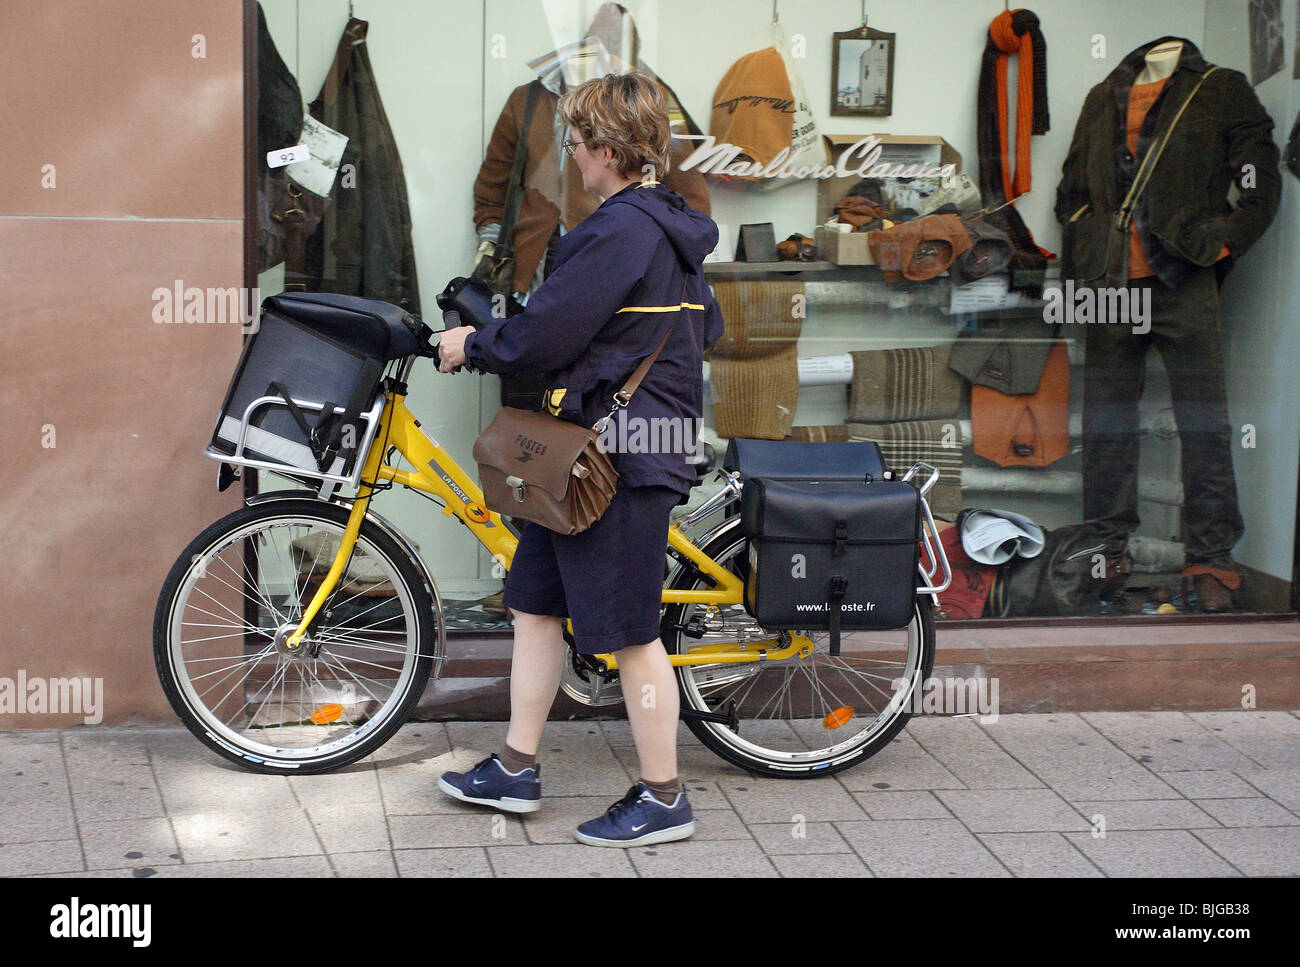 Factrice avec un vélo, Strasbourg, France Banque D'Images